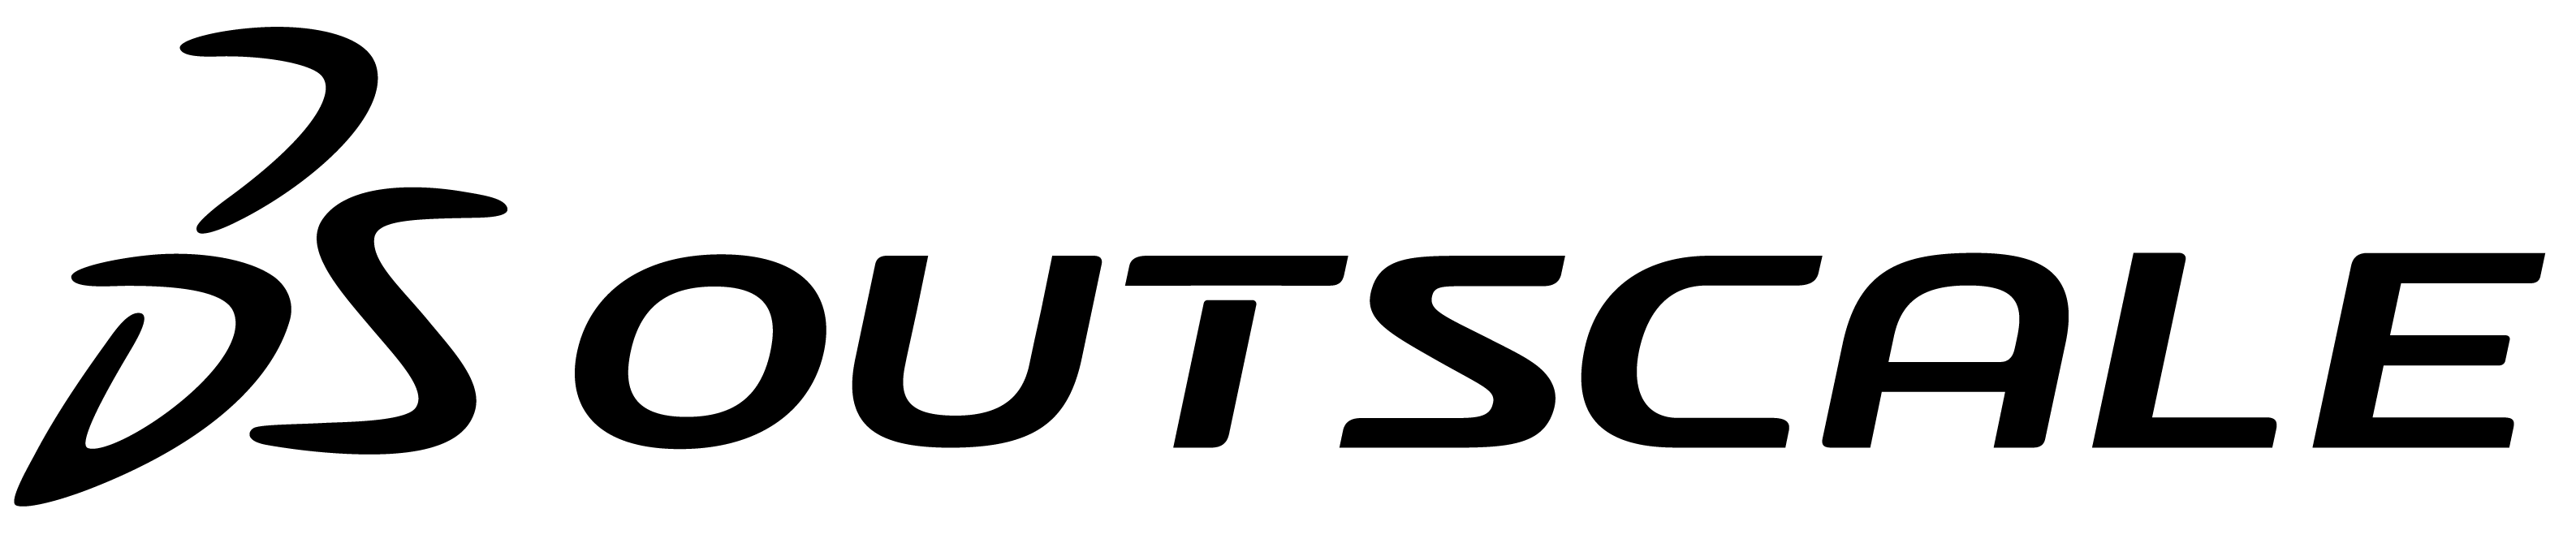 Logo_Outscale_Noir_RGB